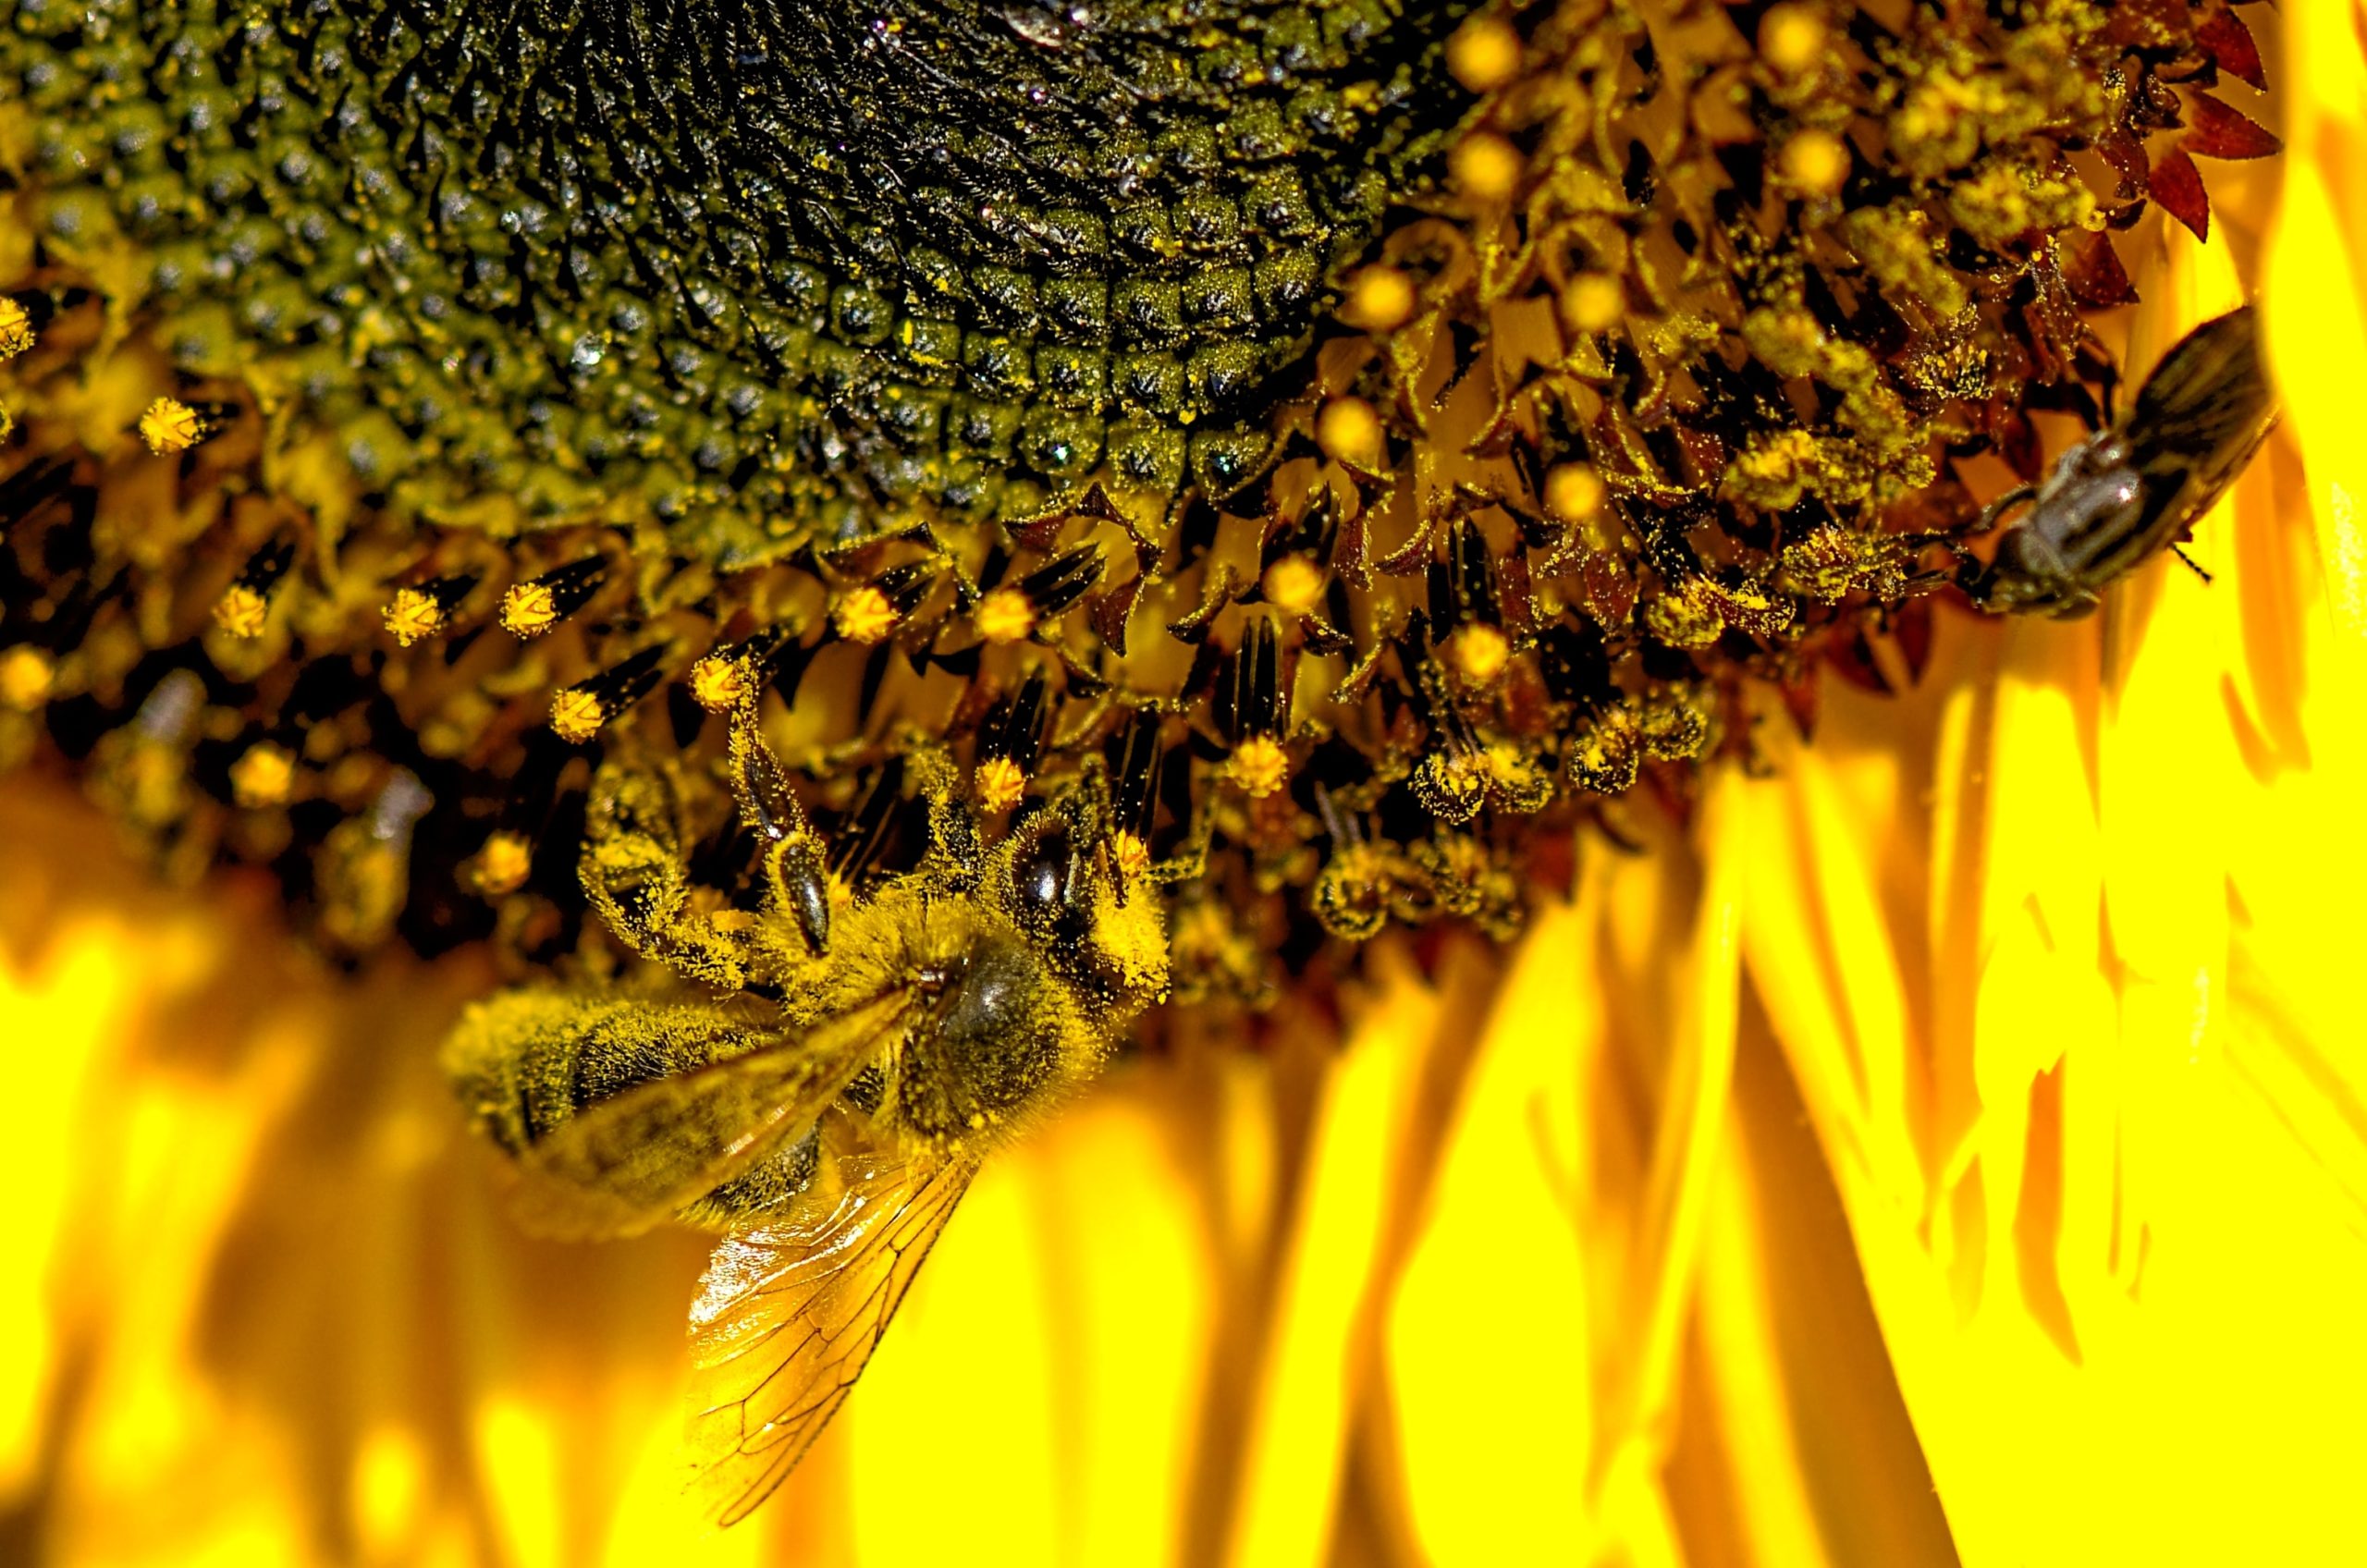 Welttag der Bienen